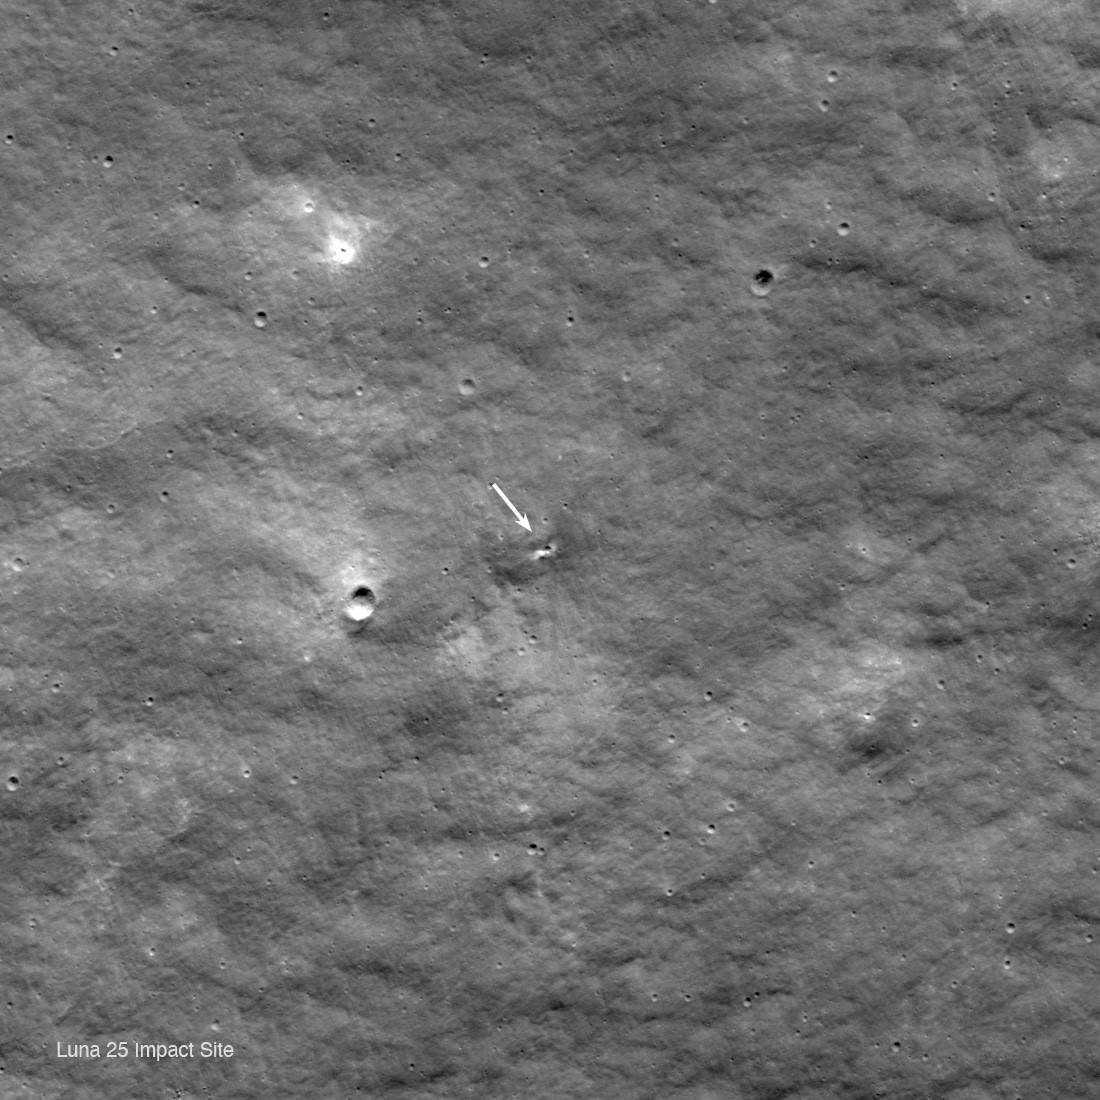 Rusya’nın Ay yüzeyine çarpan uzay aracı 10 metre çapında krater oluşturdu